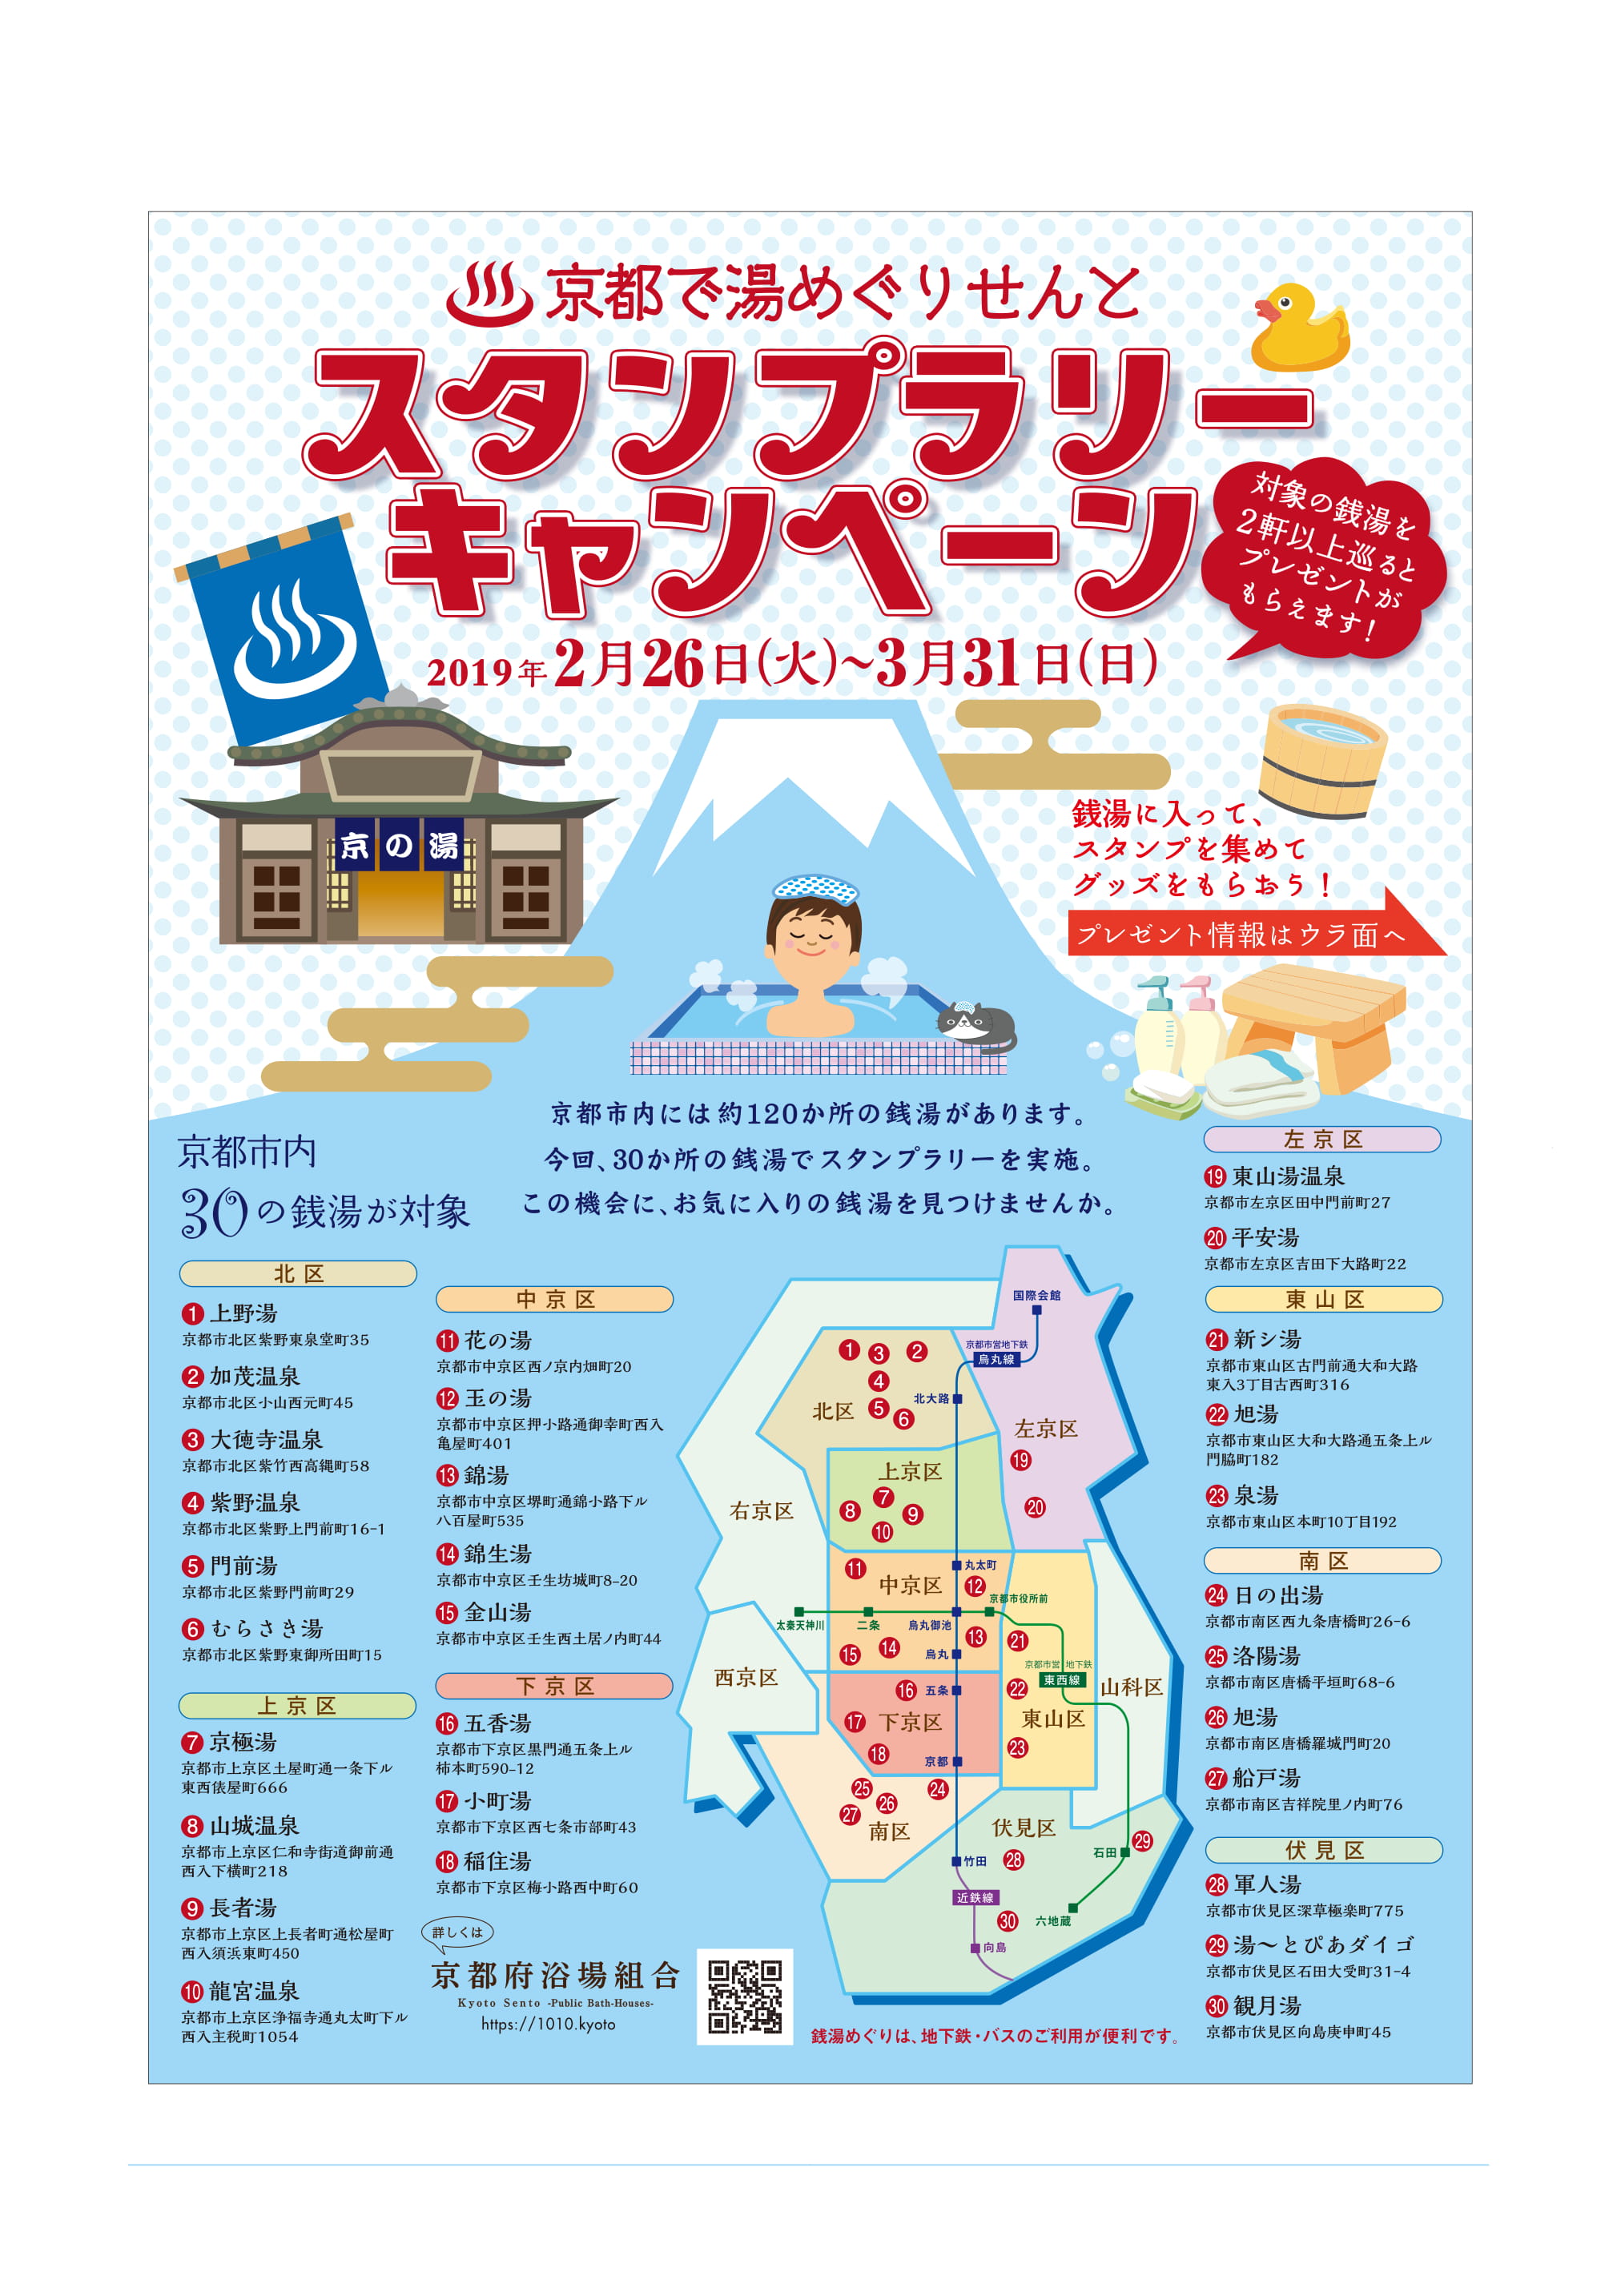 京都で湯めぐりせんと スタンプラリーキャンペーンを実施します 公式 京都銭湯 京都の銭湯100軒以上をご紹介